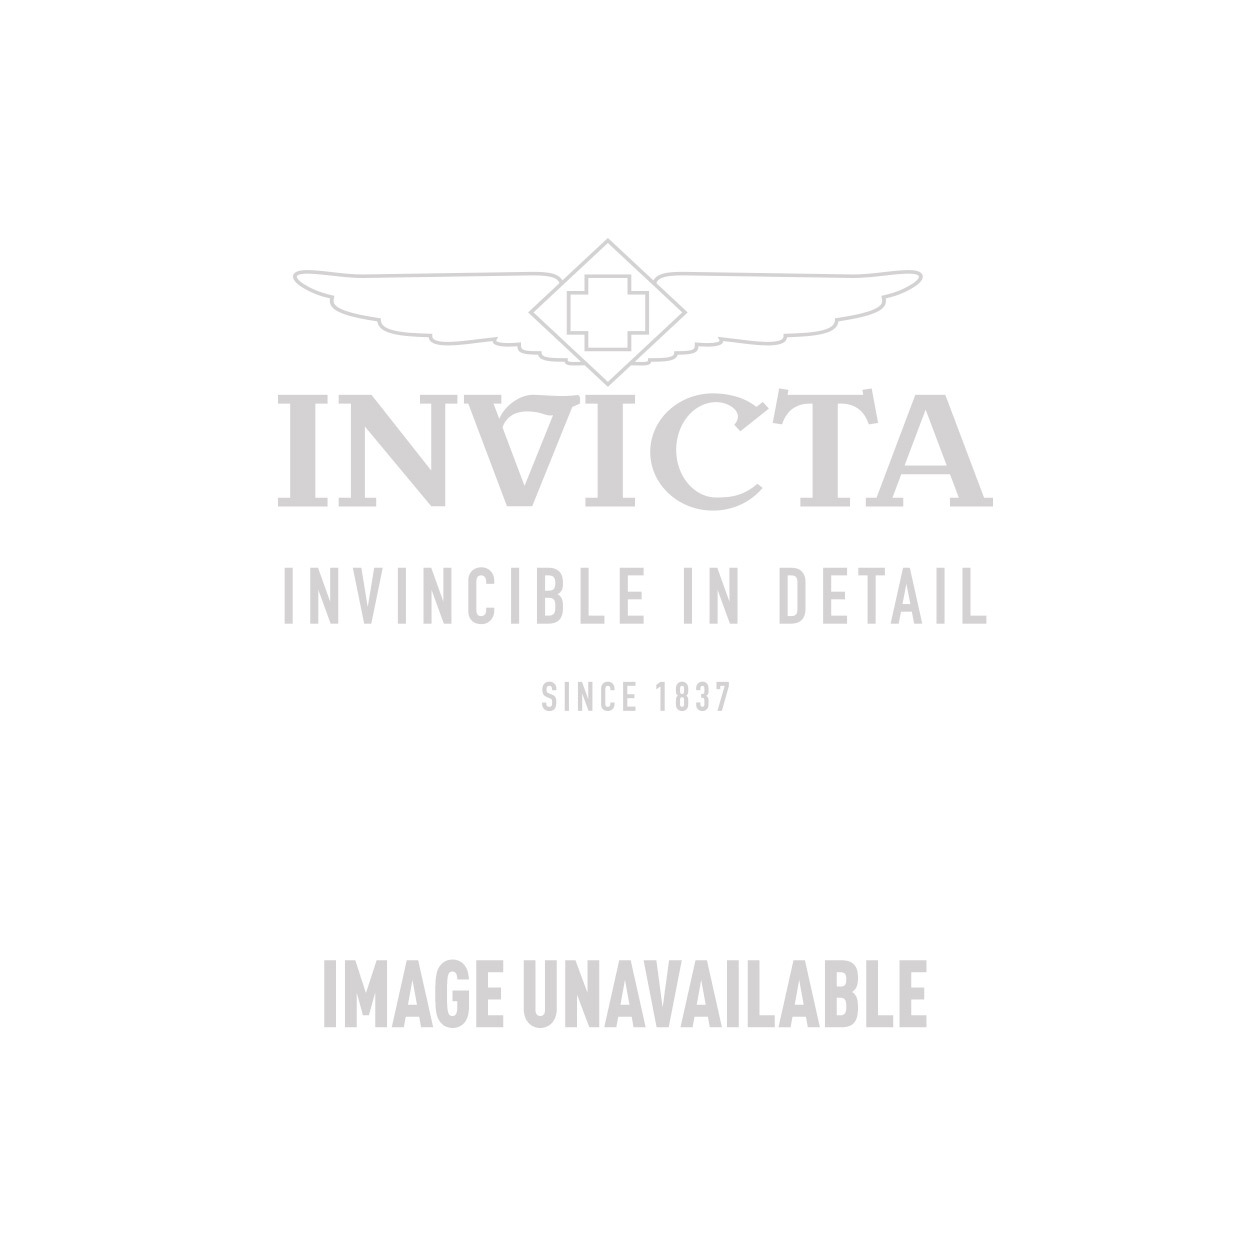 Invicta Model 31504